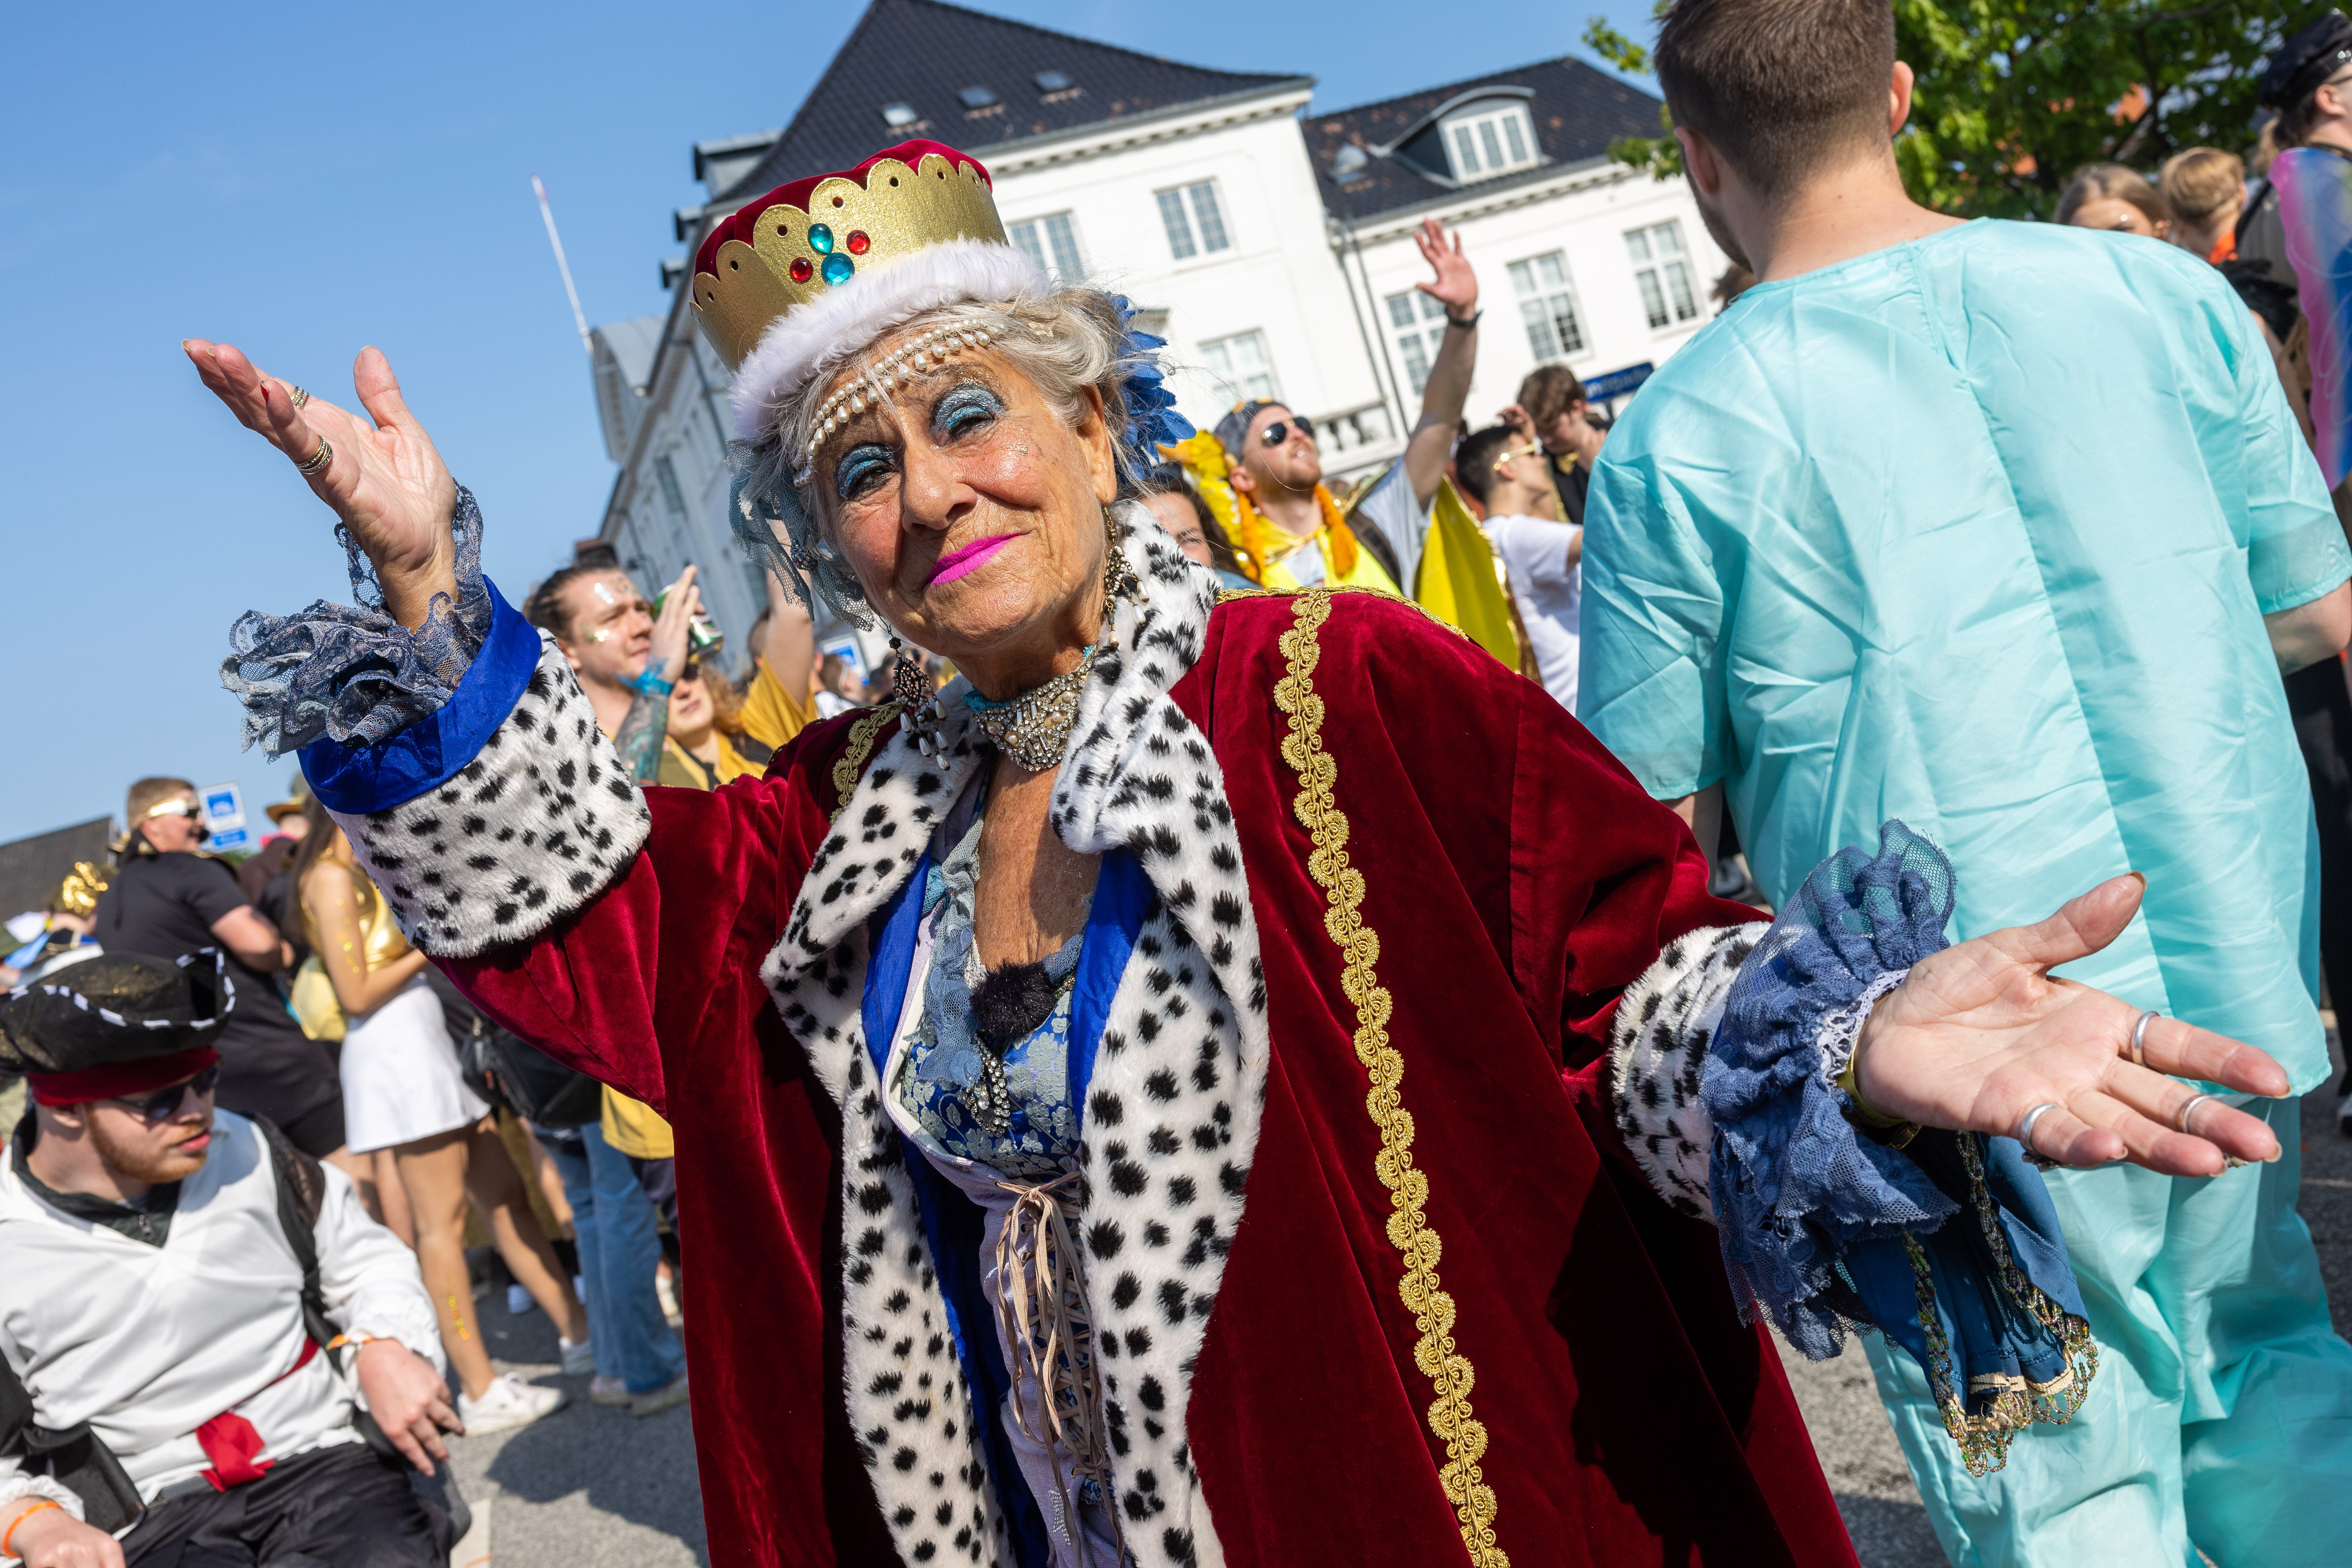 Se karnevals-billederne: Festen er en dronning værdig